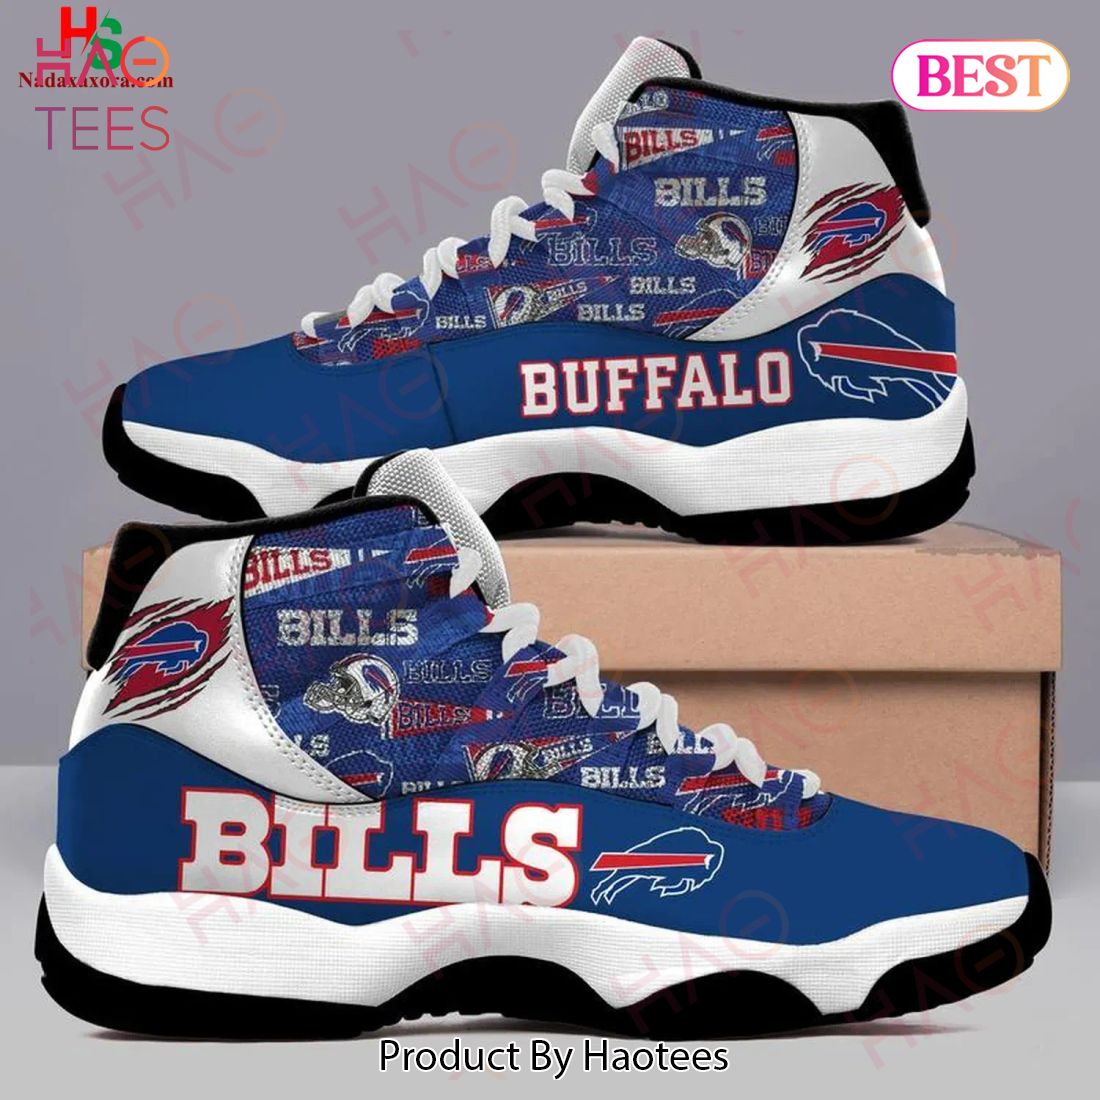 NFL Buffalo Bills Football Team Air Jordan 11 Sneakers Shoes